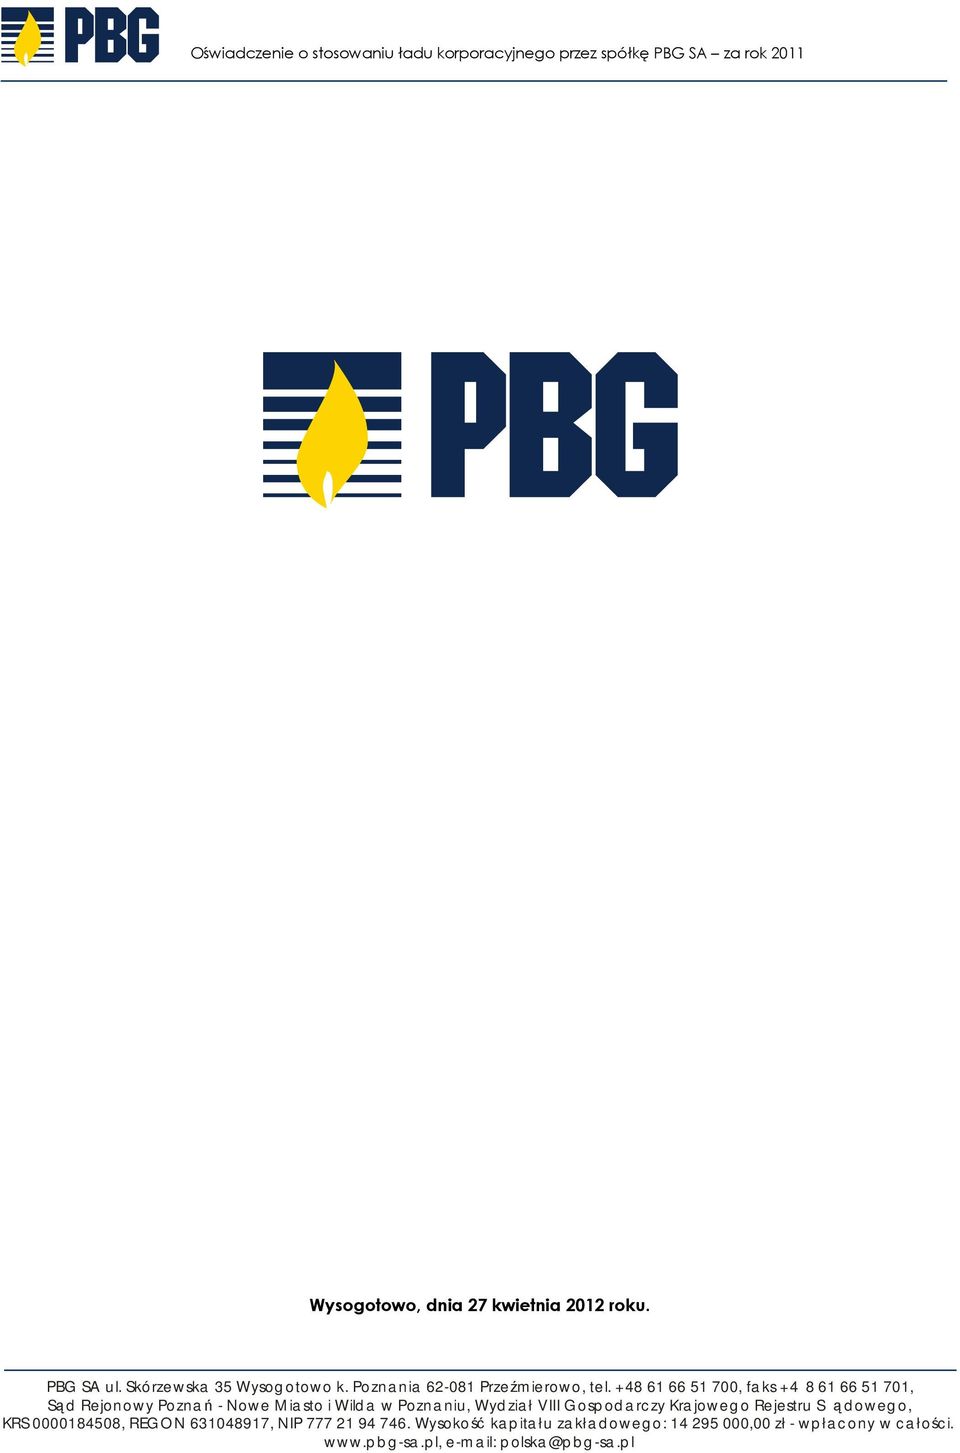 spółkę PBG SA za rok 2011